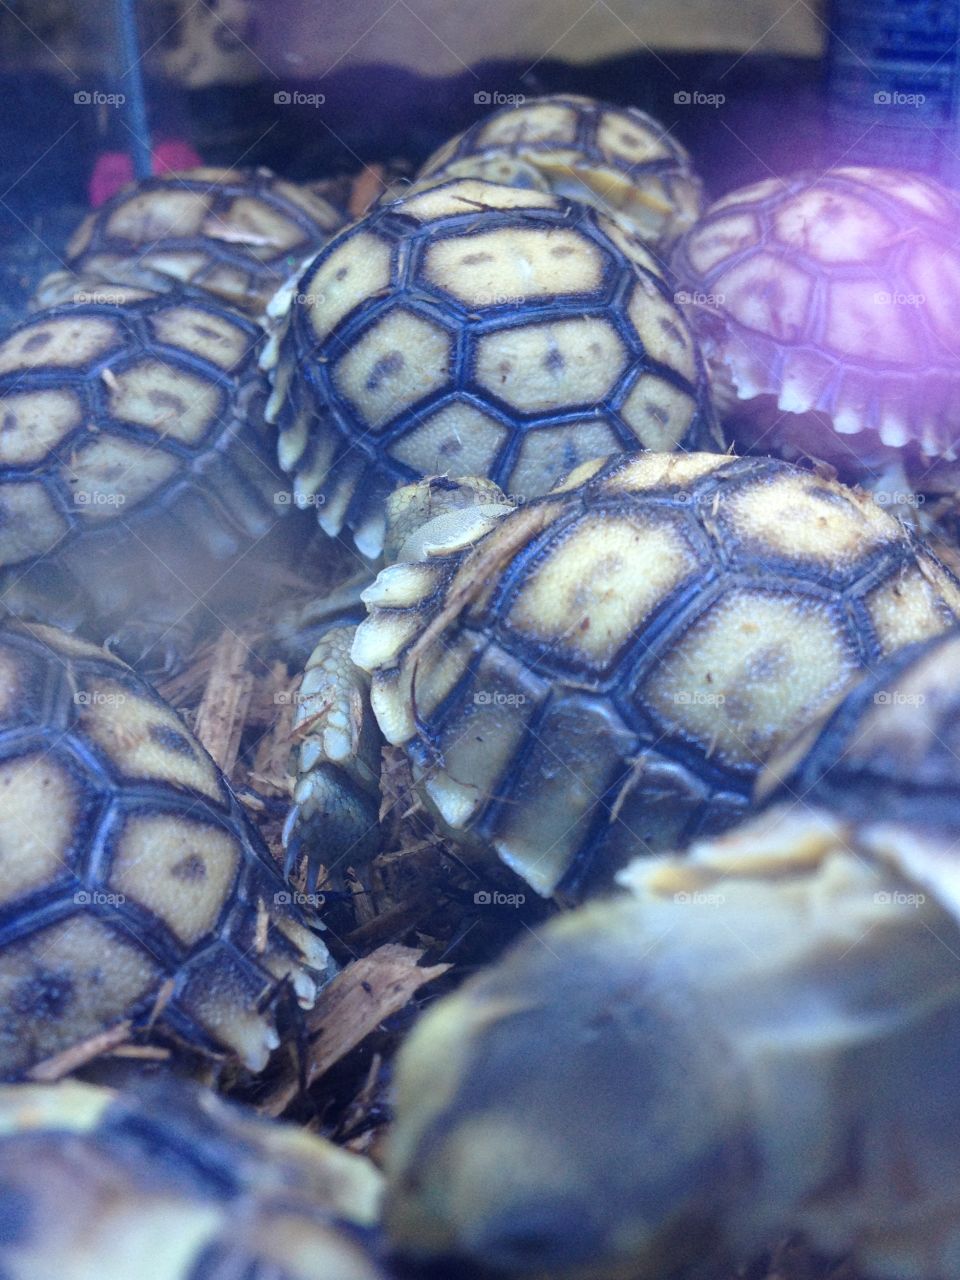 Turtles!🐢